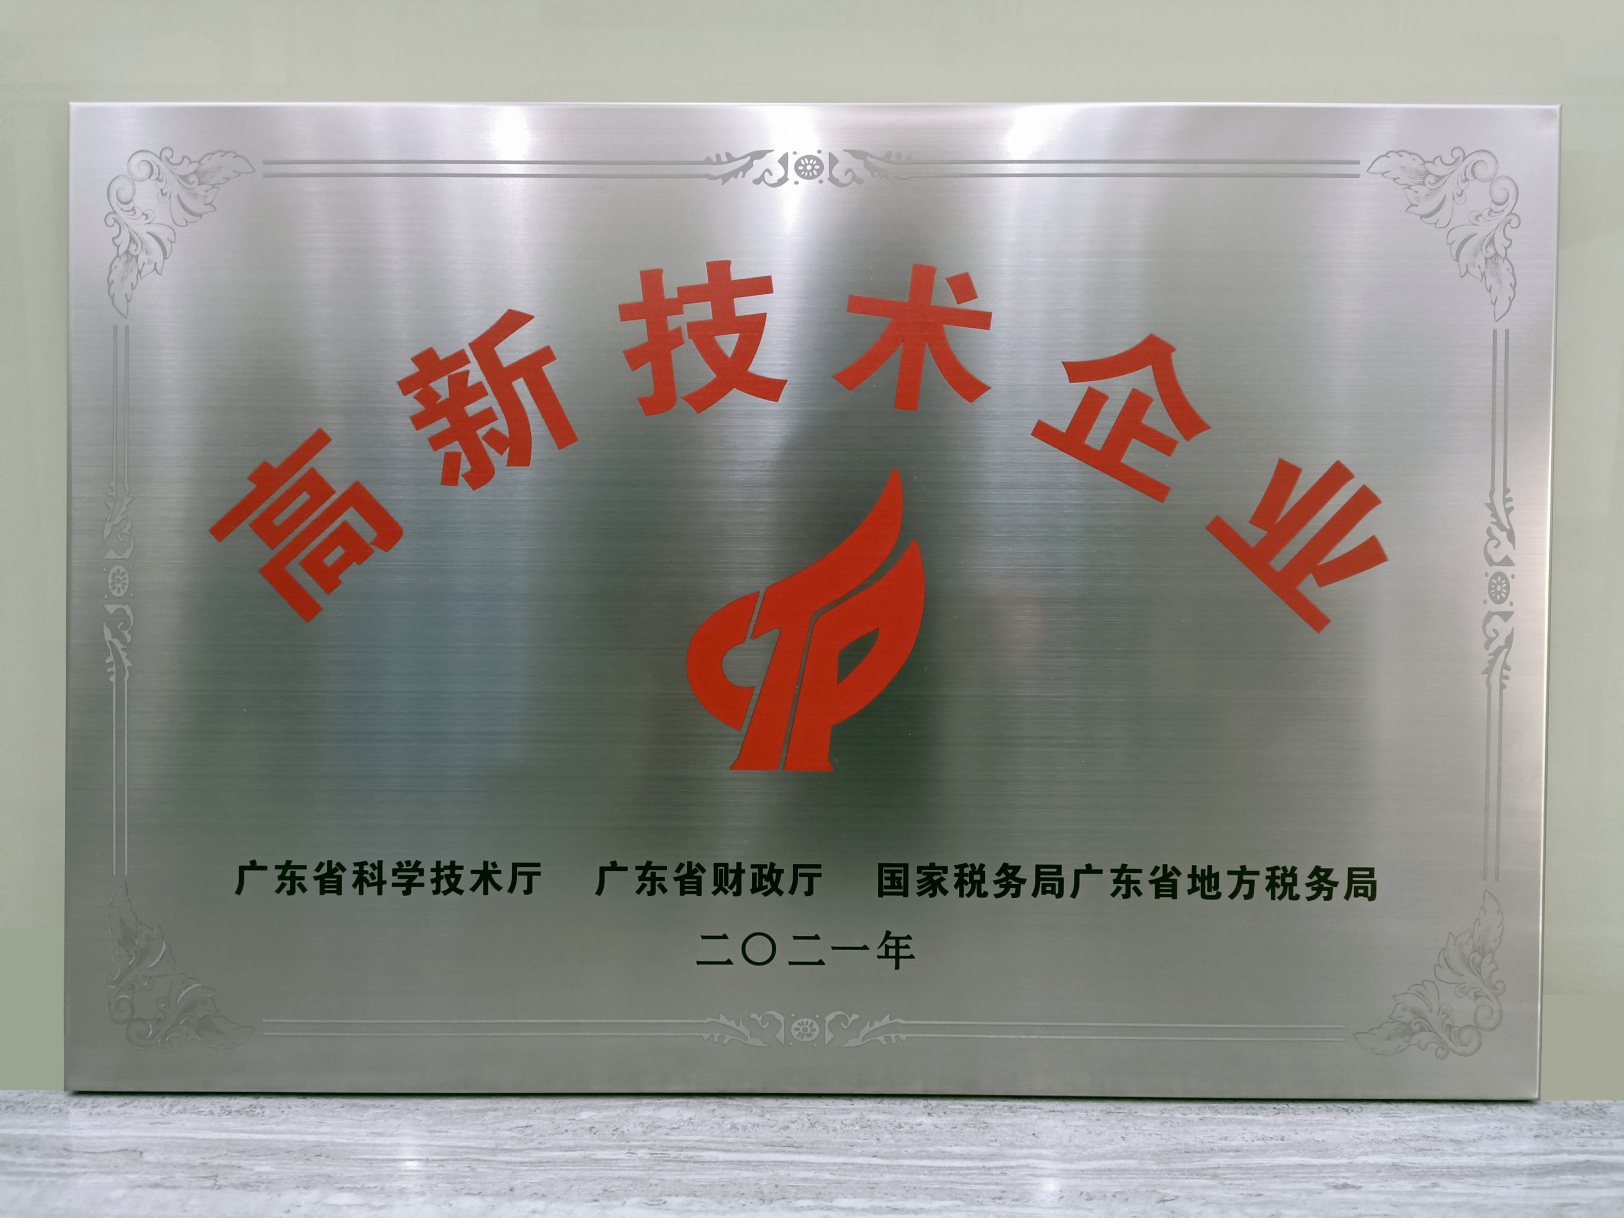 【喜讯】祝贺广州微米物联网科技股份有限公司获得“高新技术企业”认证称号